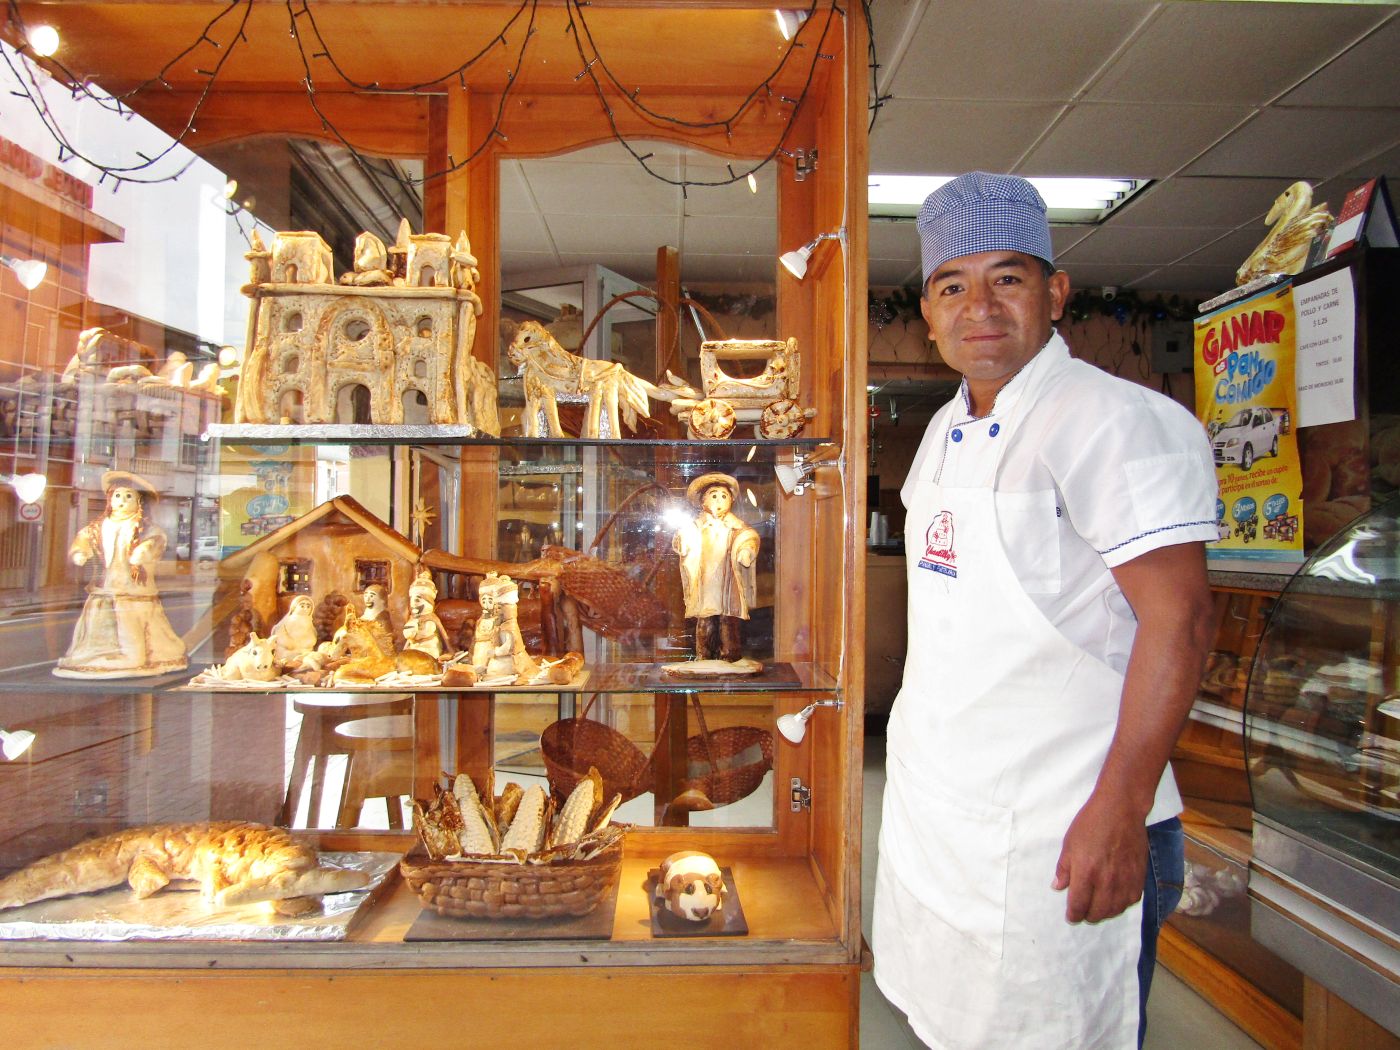 La habilidad e ingenio al trabajar con la masa de pan  se refleja en cada creación del artesano cuencano, Manuel Pérez Gavilanes, propietario de Panadería Chantilly.  